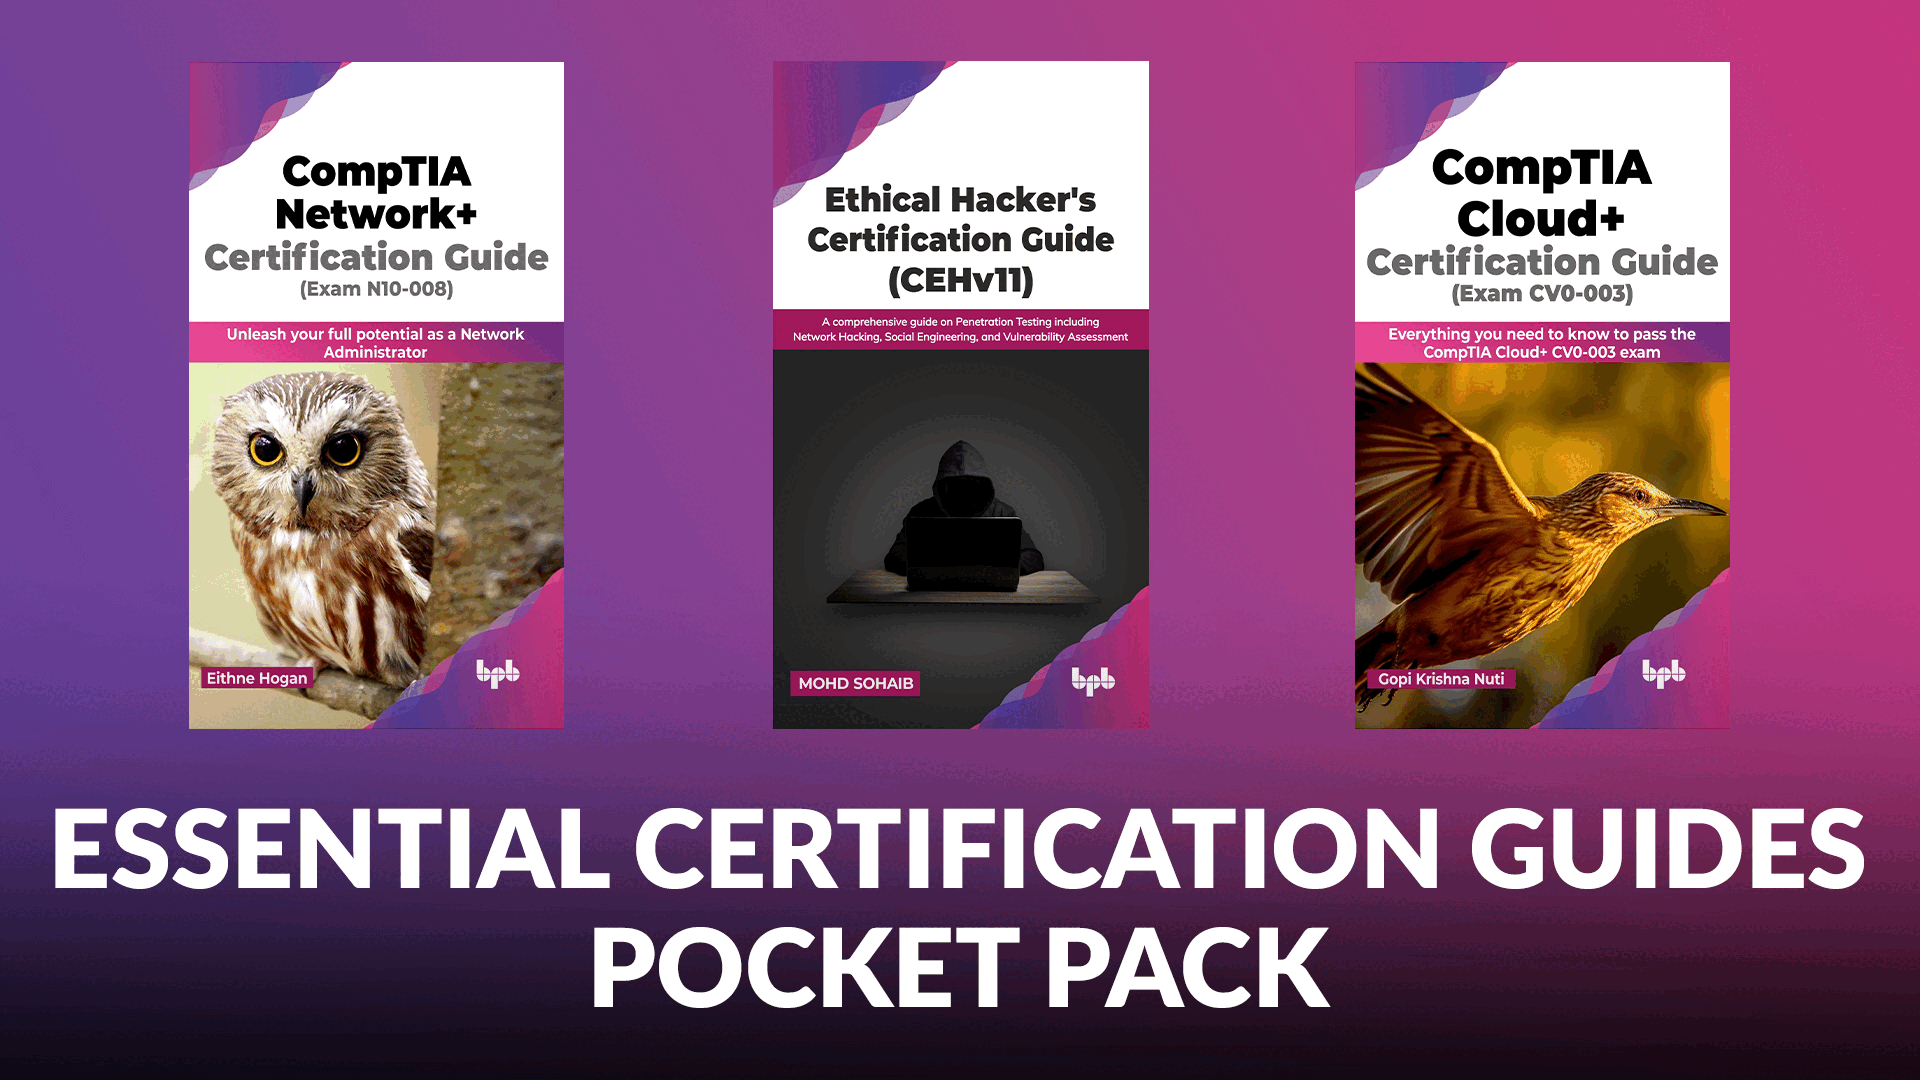 Pocket Pack Bundles ending soon: Unity Pocket Pack, Game Development Pocket Pack, Using AI Pocket Pack, Essential Certification Guides Pocket Pack.